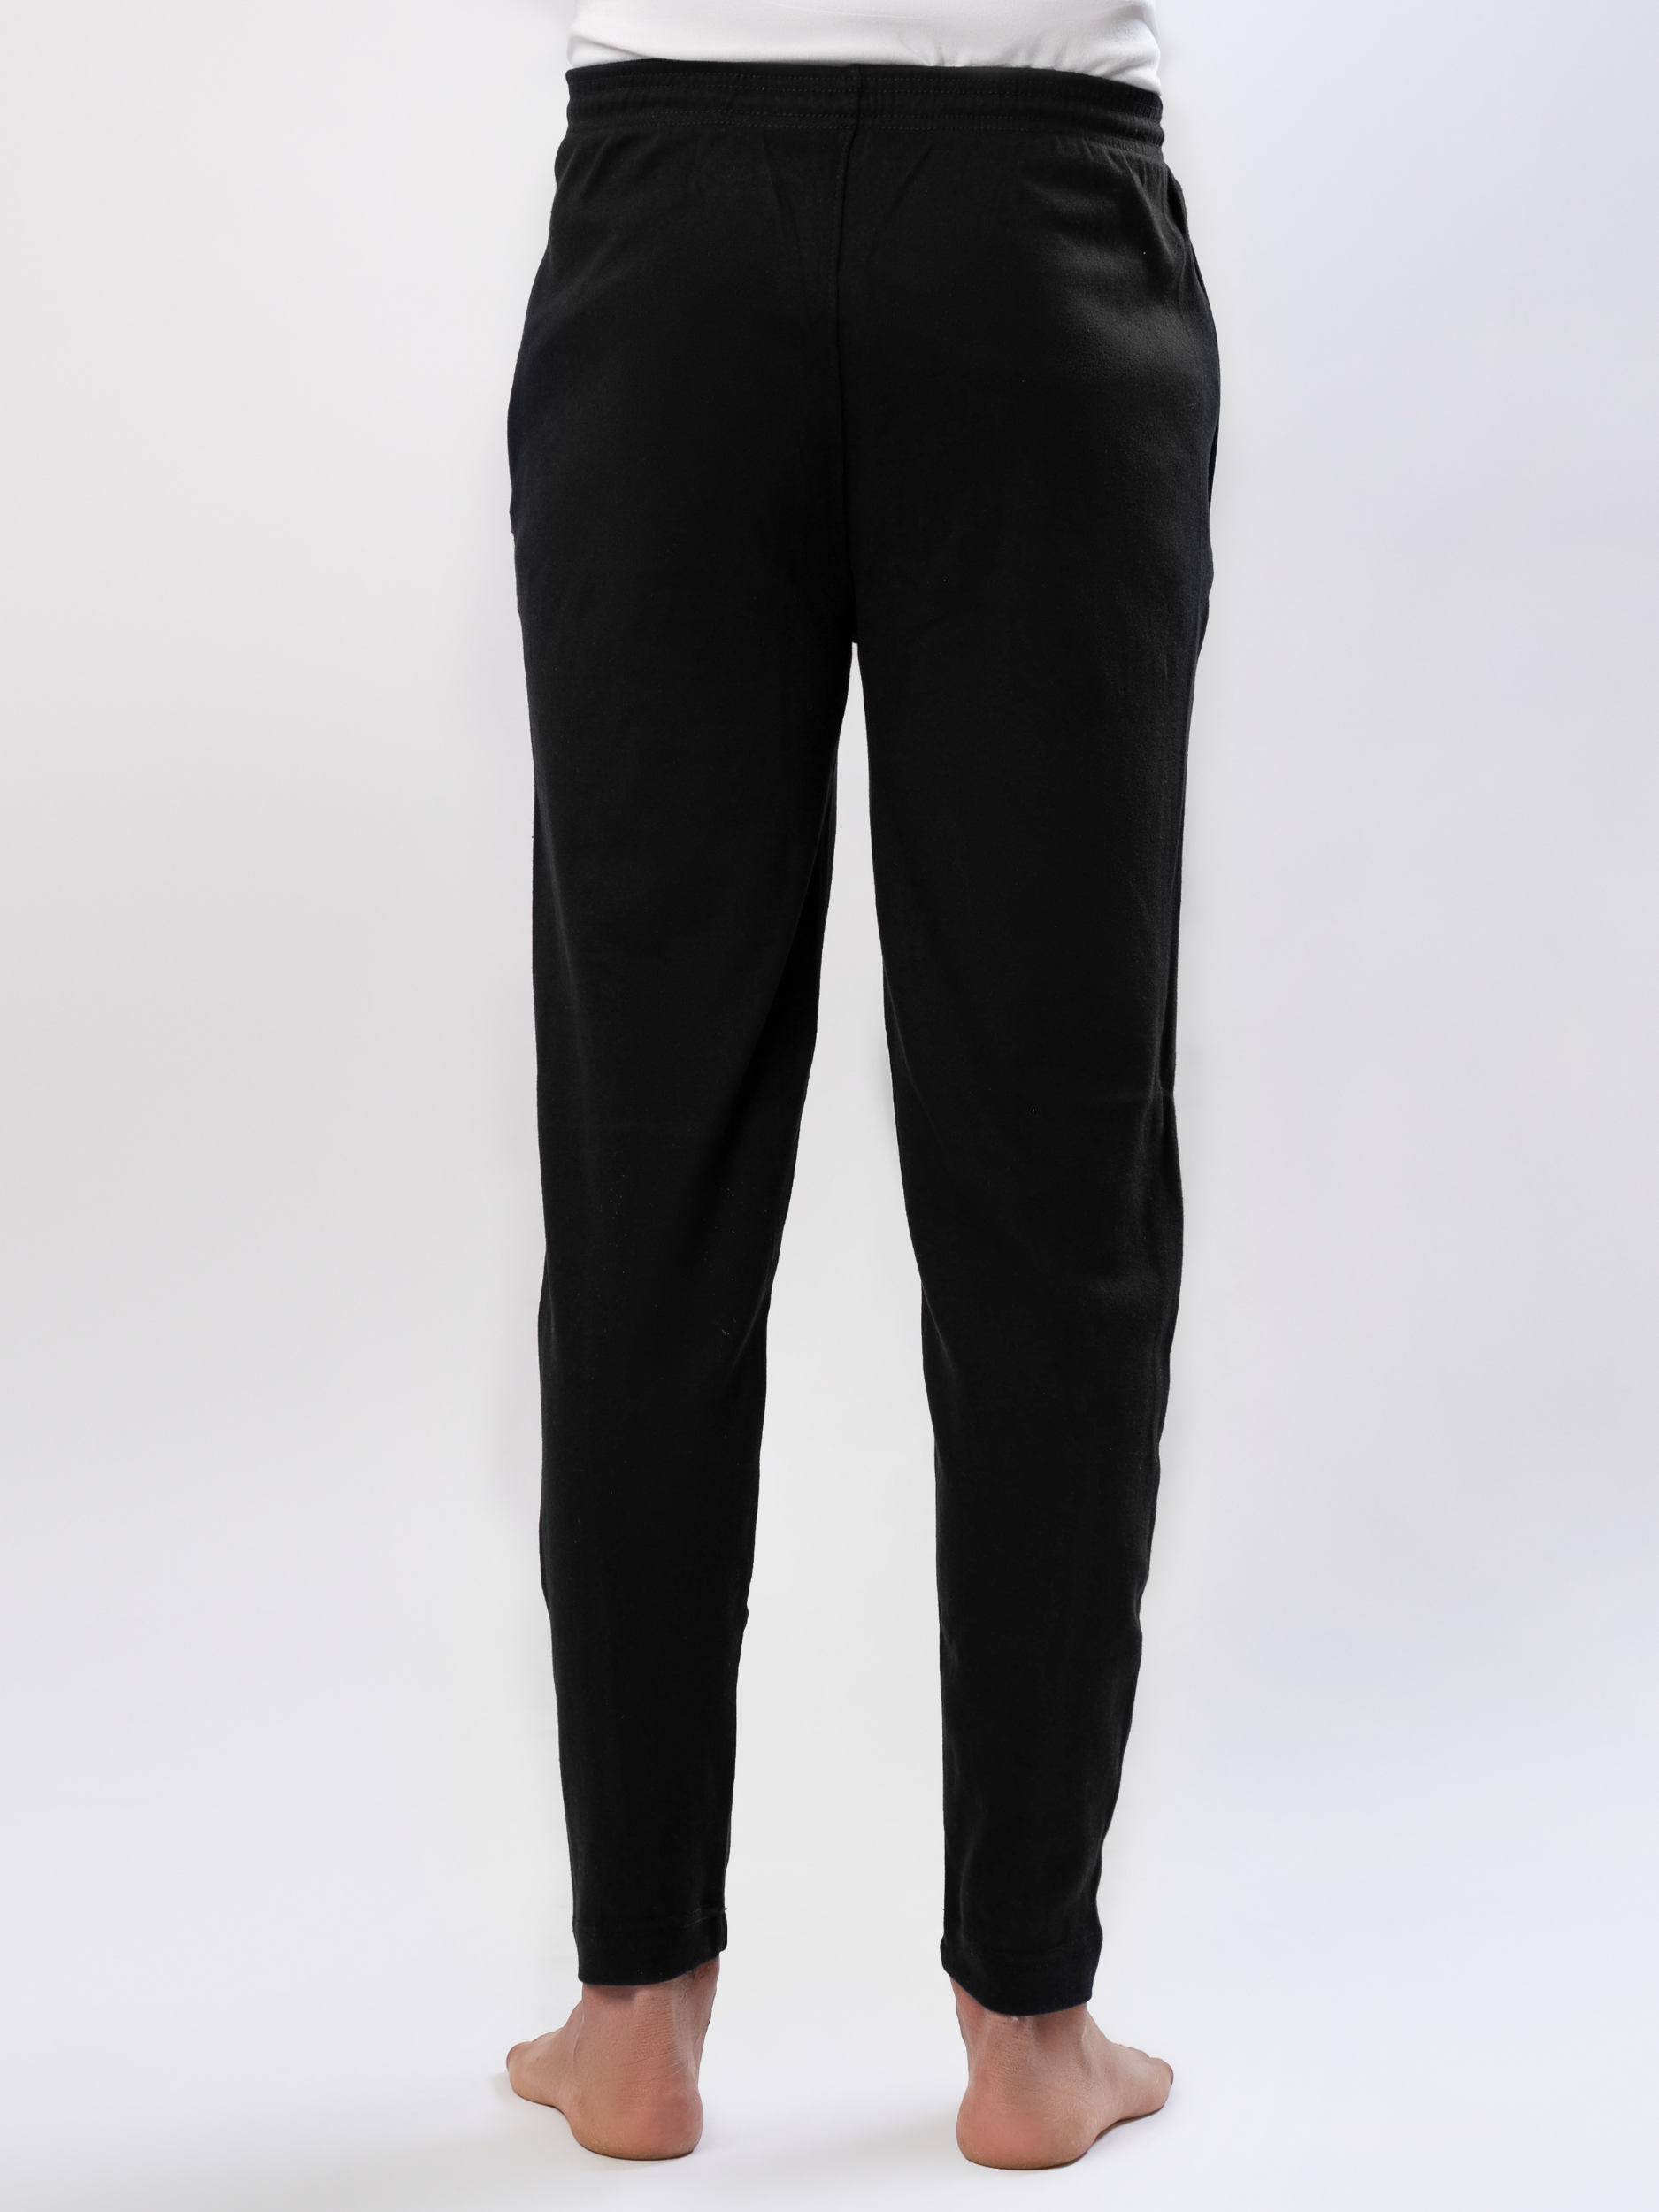 Max Zipper Premium Fitted Trouser (Black)